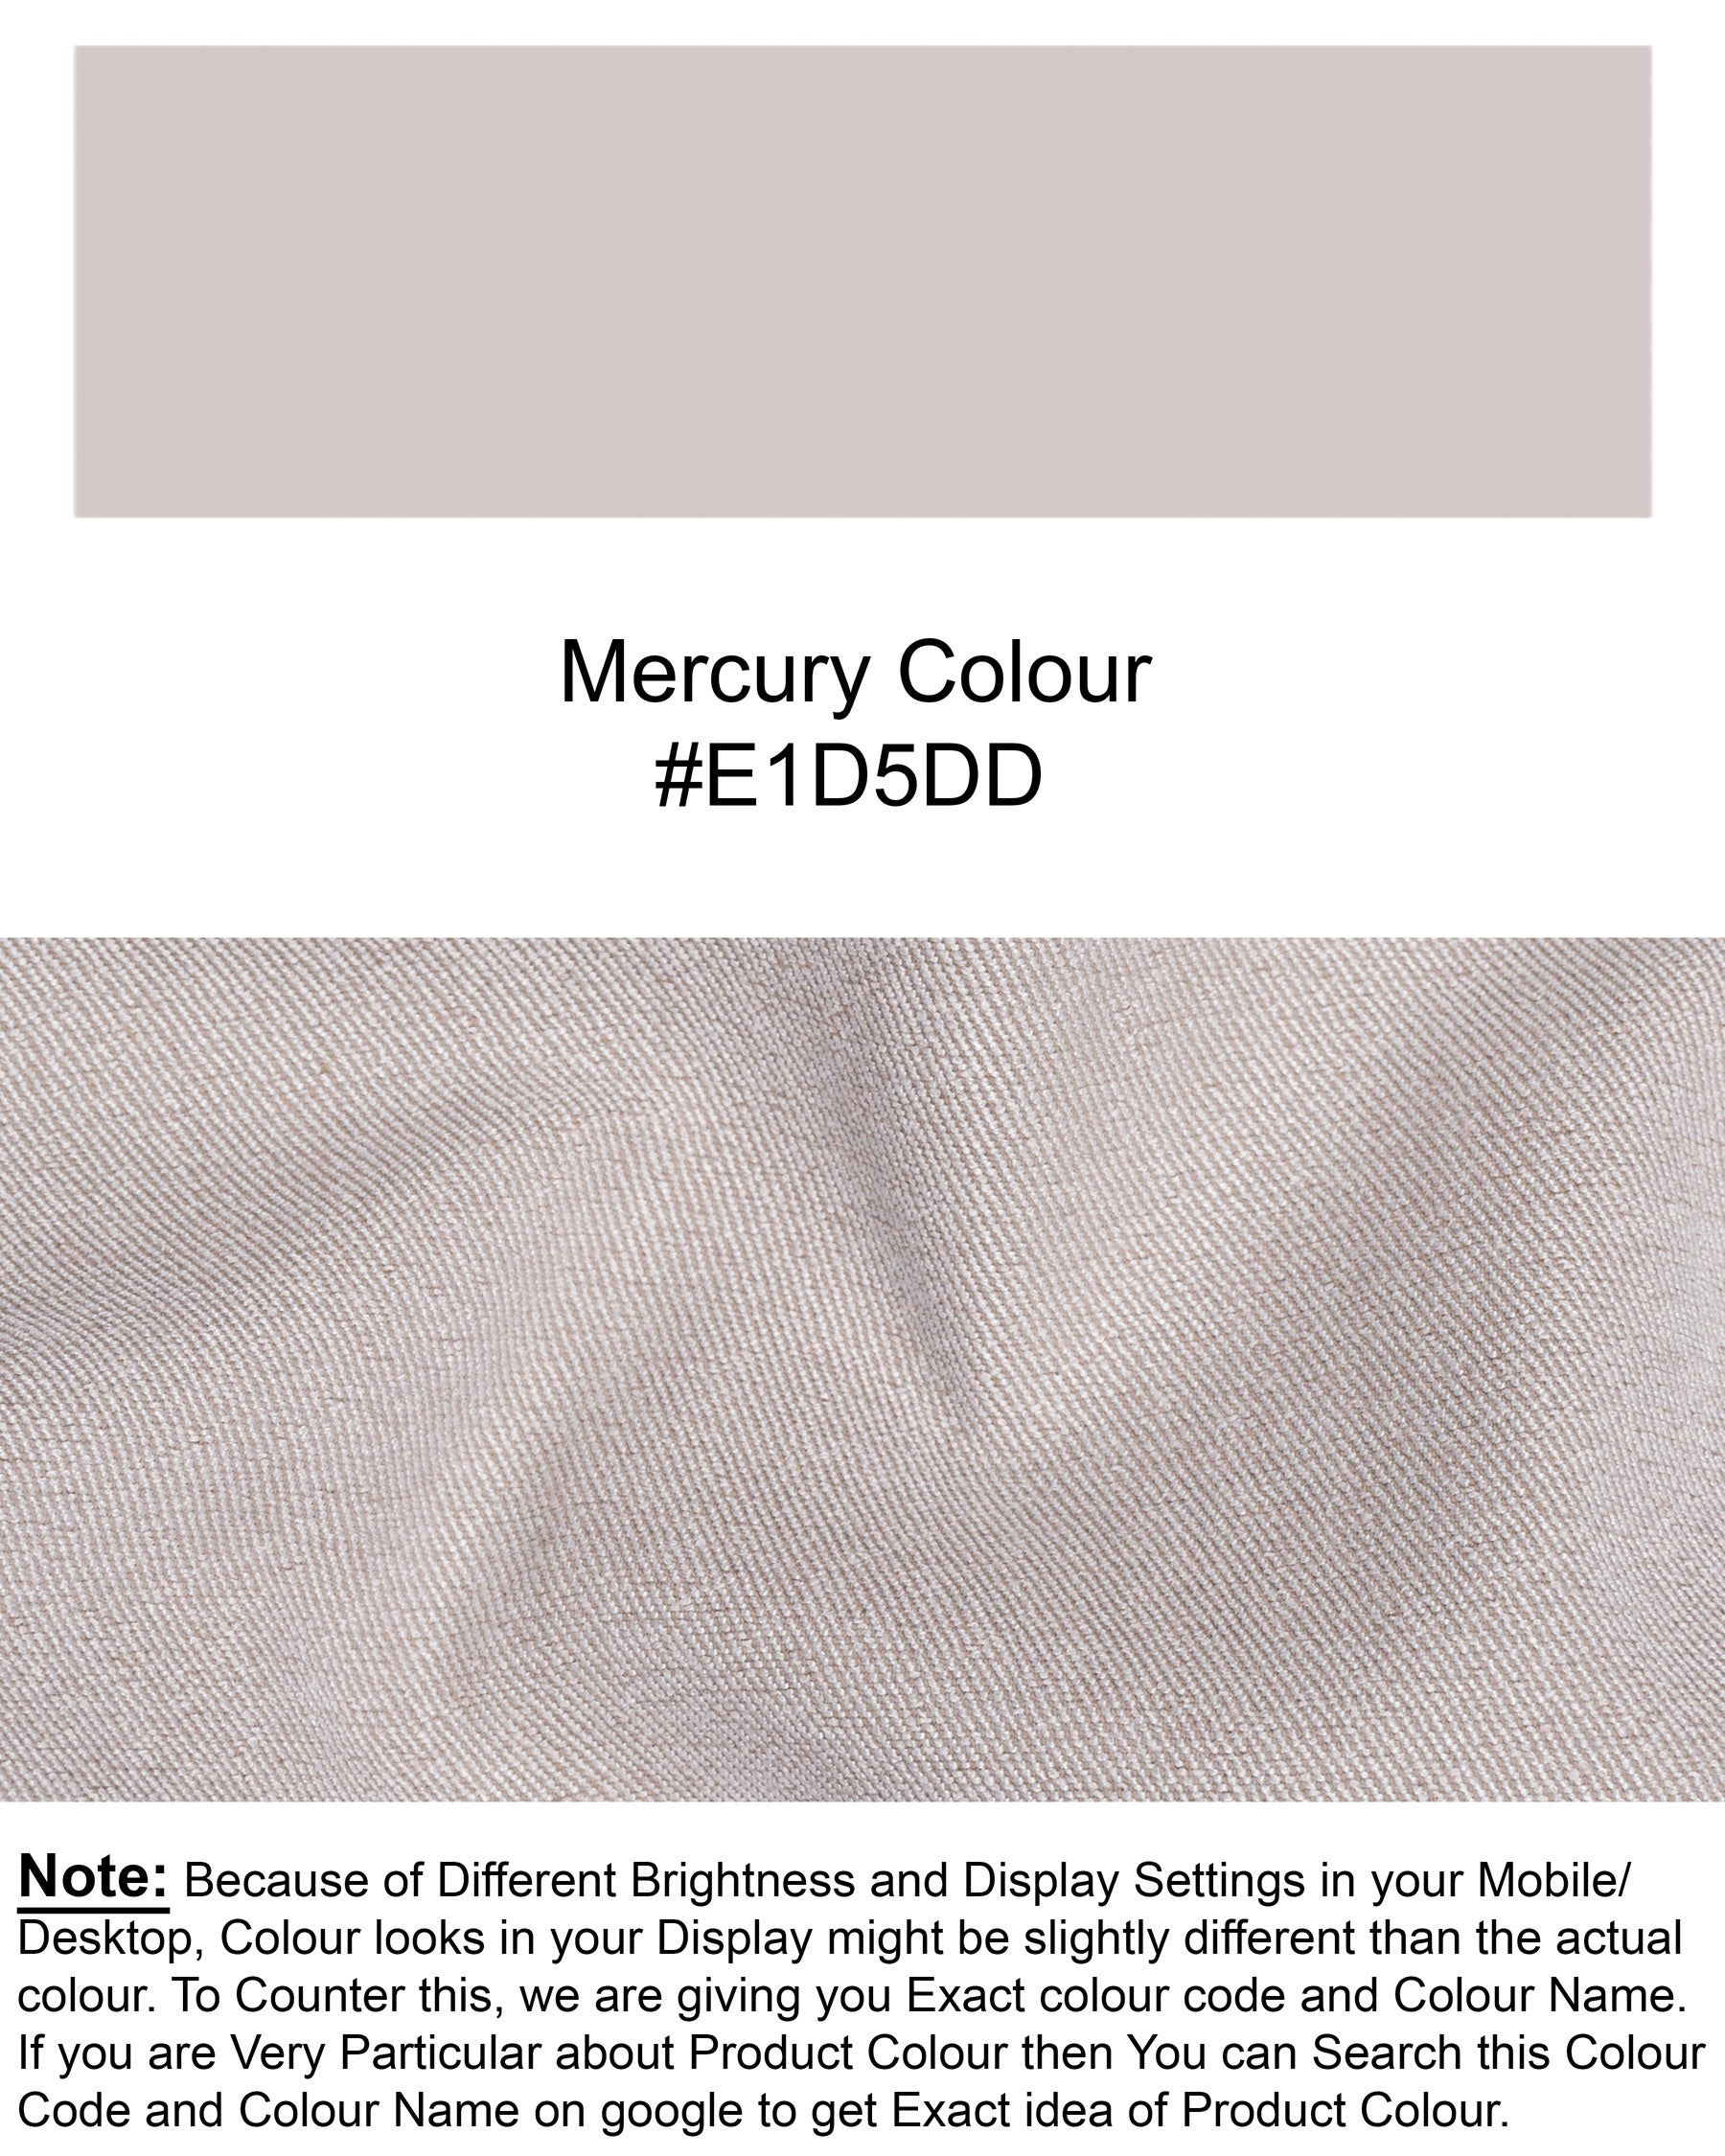 Mercury Grey Super Soft Waistcoat V1391-36, V1391-38, V1391-40, V1391-42, V1391-44, V1391-46, V1391-48, V1391-50, V1391-52, V1391-54, V1391-56, V1391-58, V1391-60